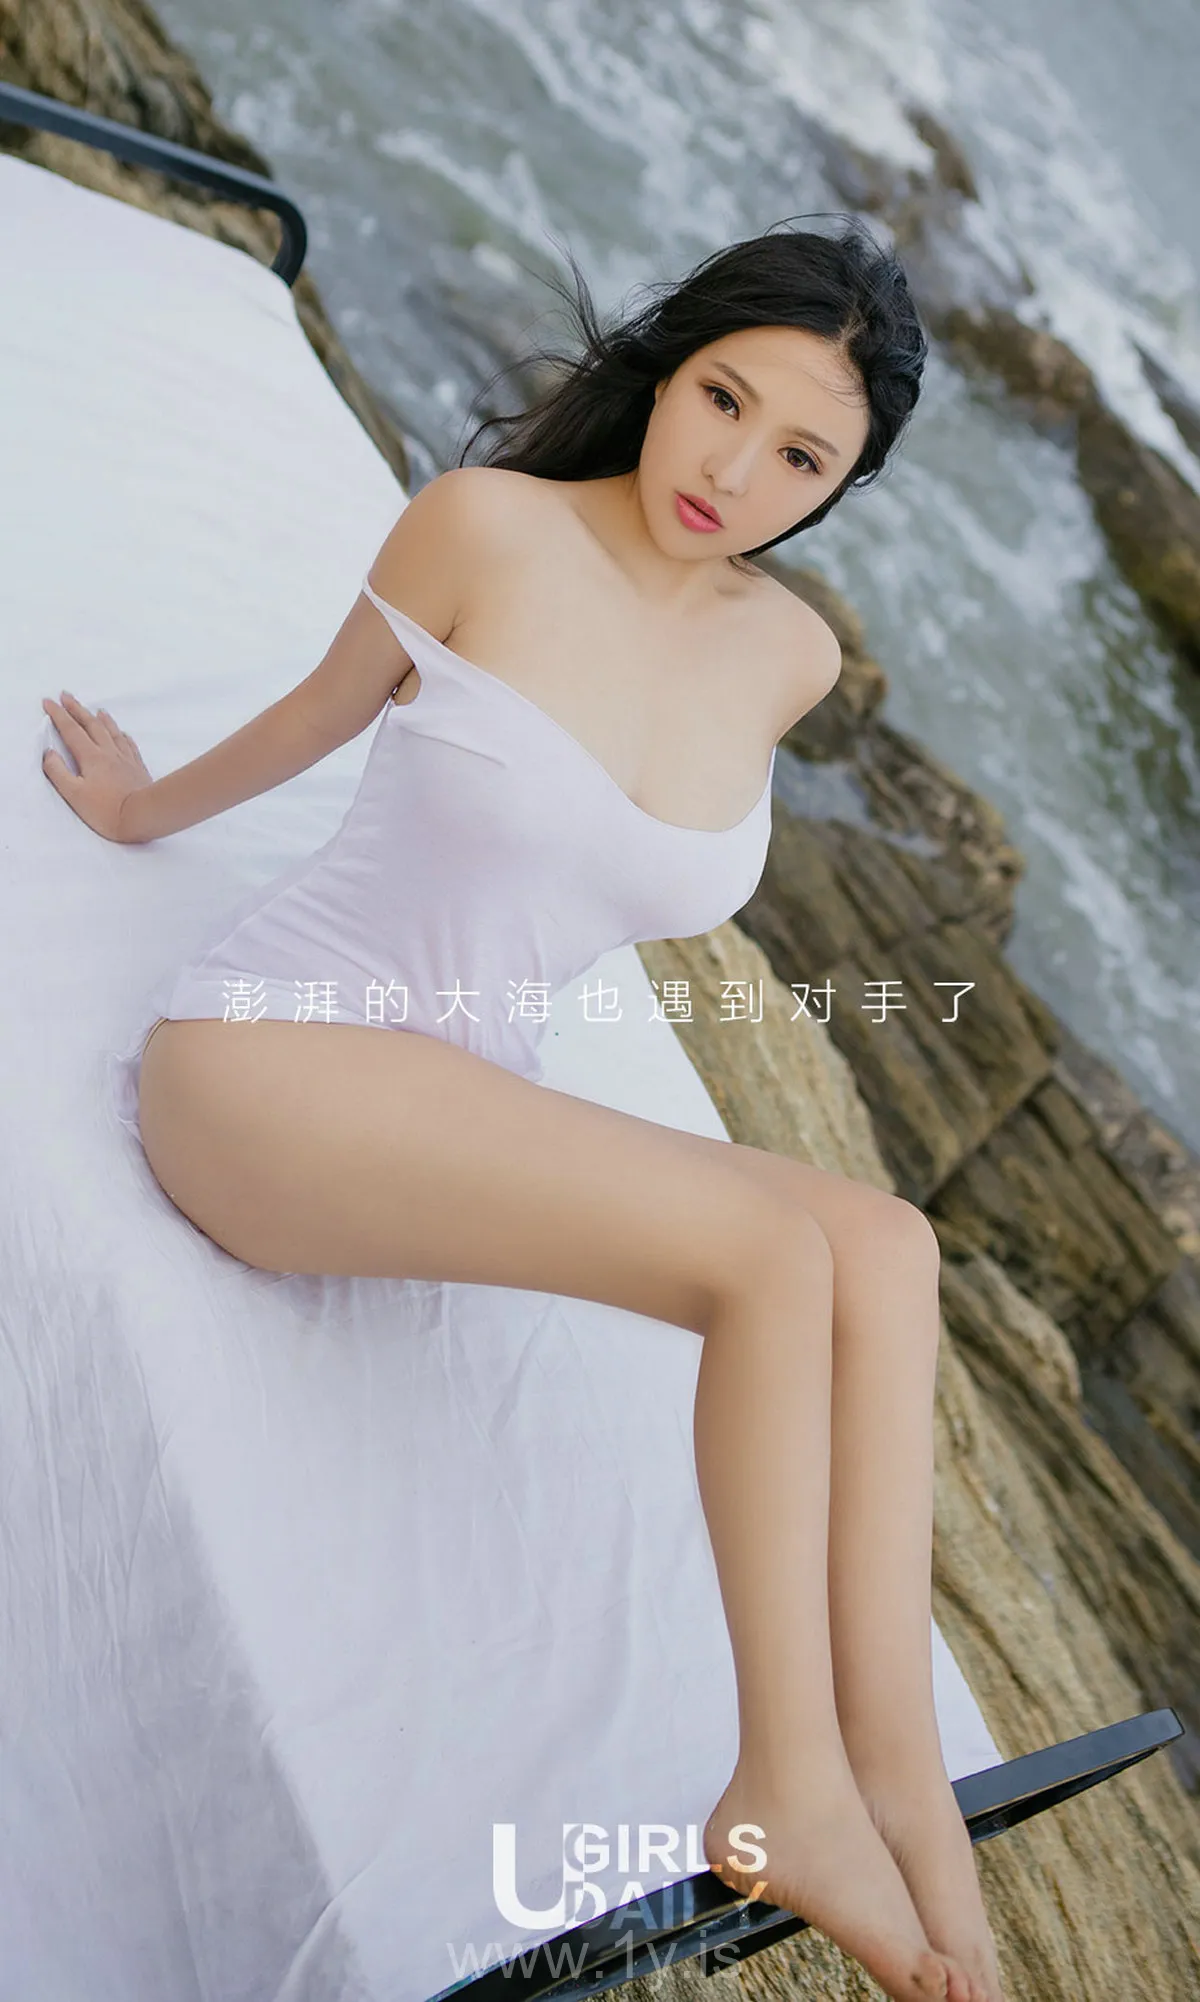 UGIRLS NO.864 Stylish & Adorable Chinese Mature Princess 倪叶藤